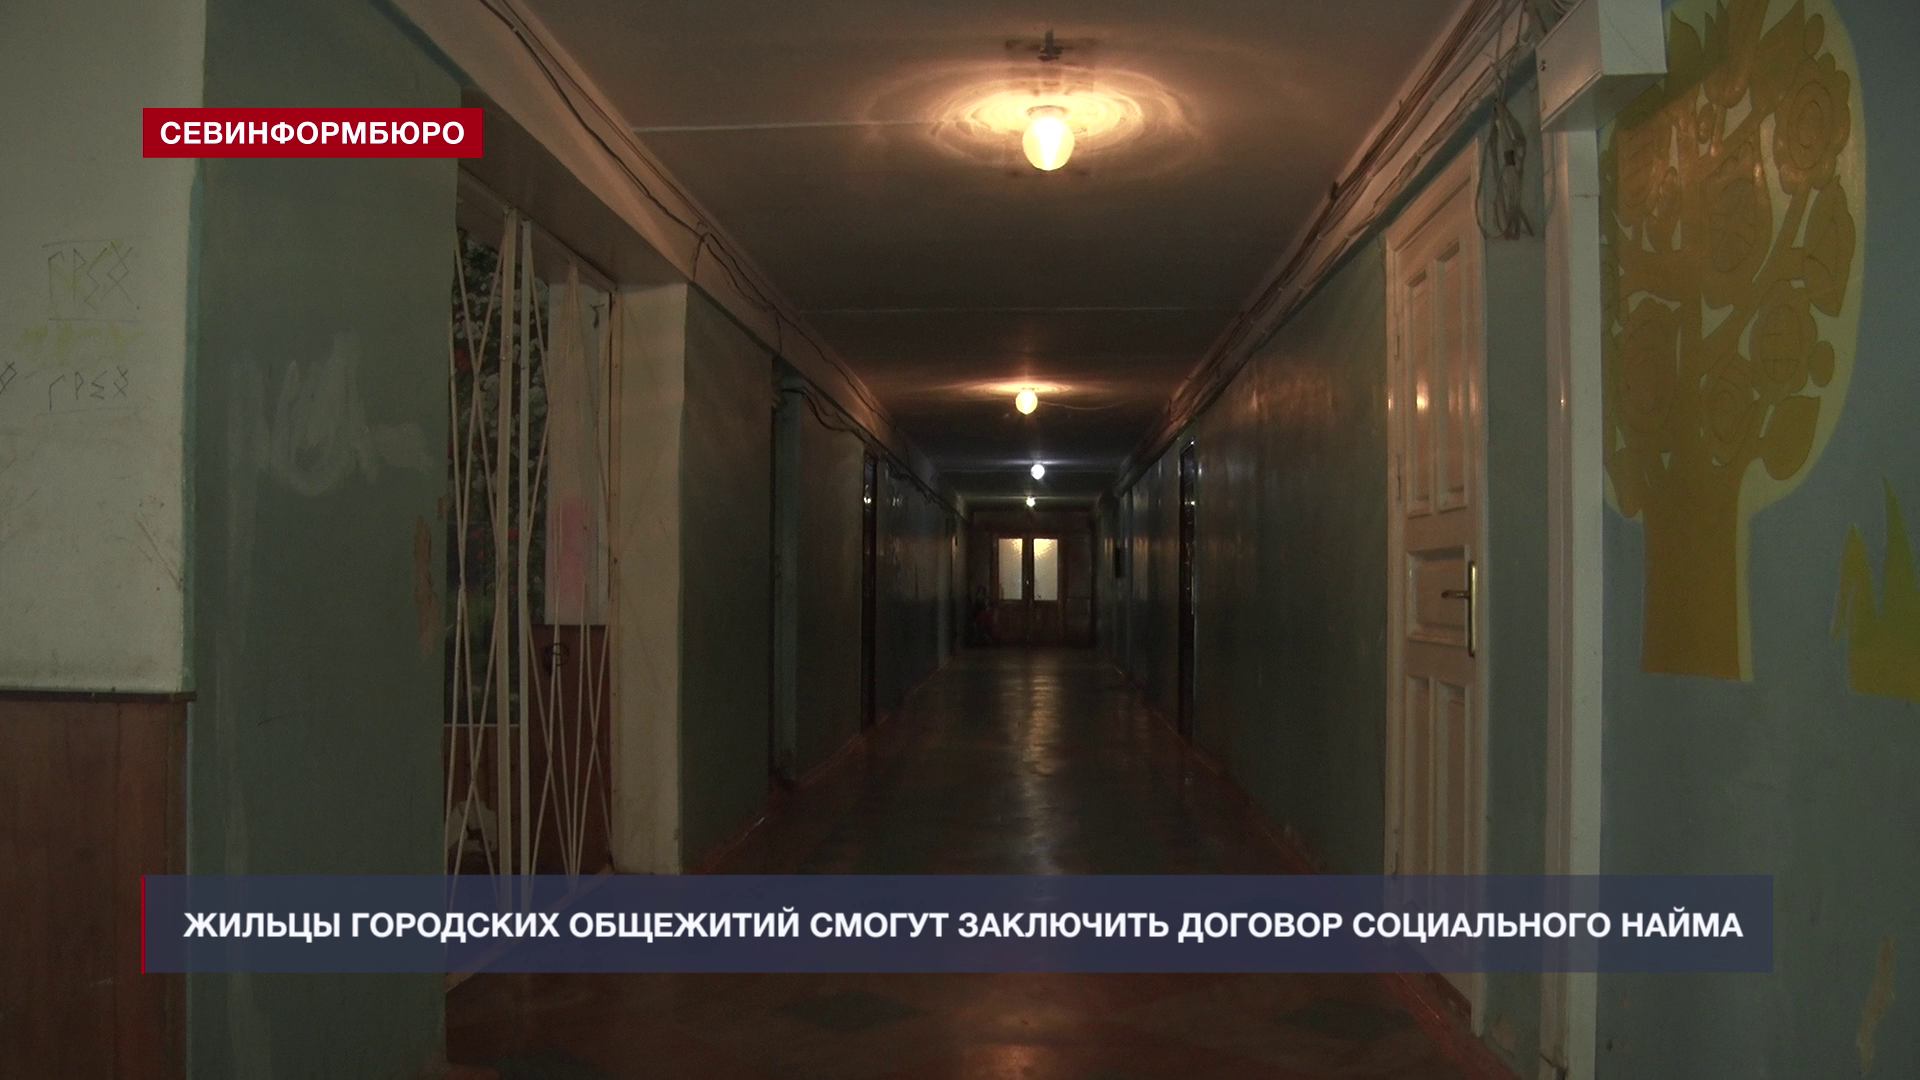 Общежитие можно приватизировать. Общежитие на Севастопольской. Саск Севастополь общежитие. Плата за найм в общежитии.